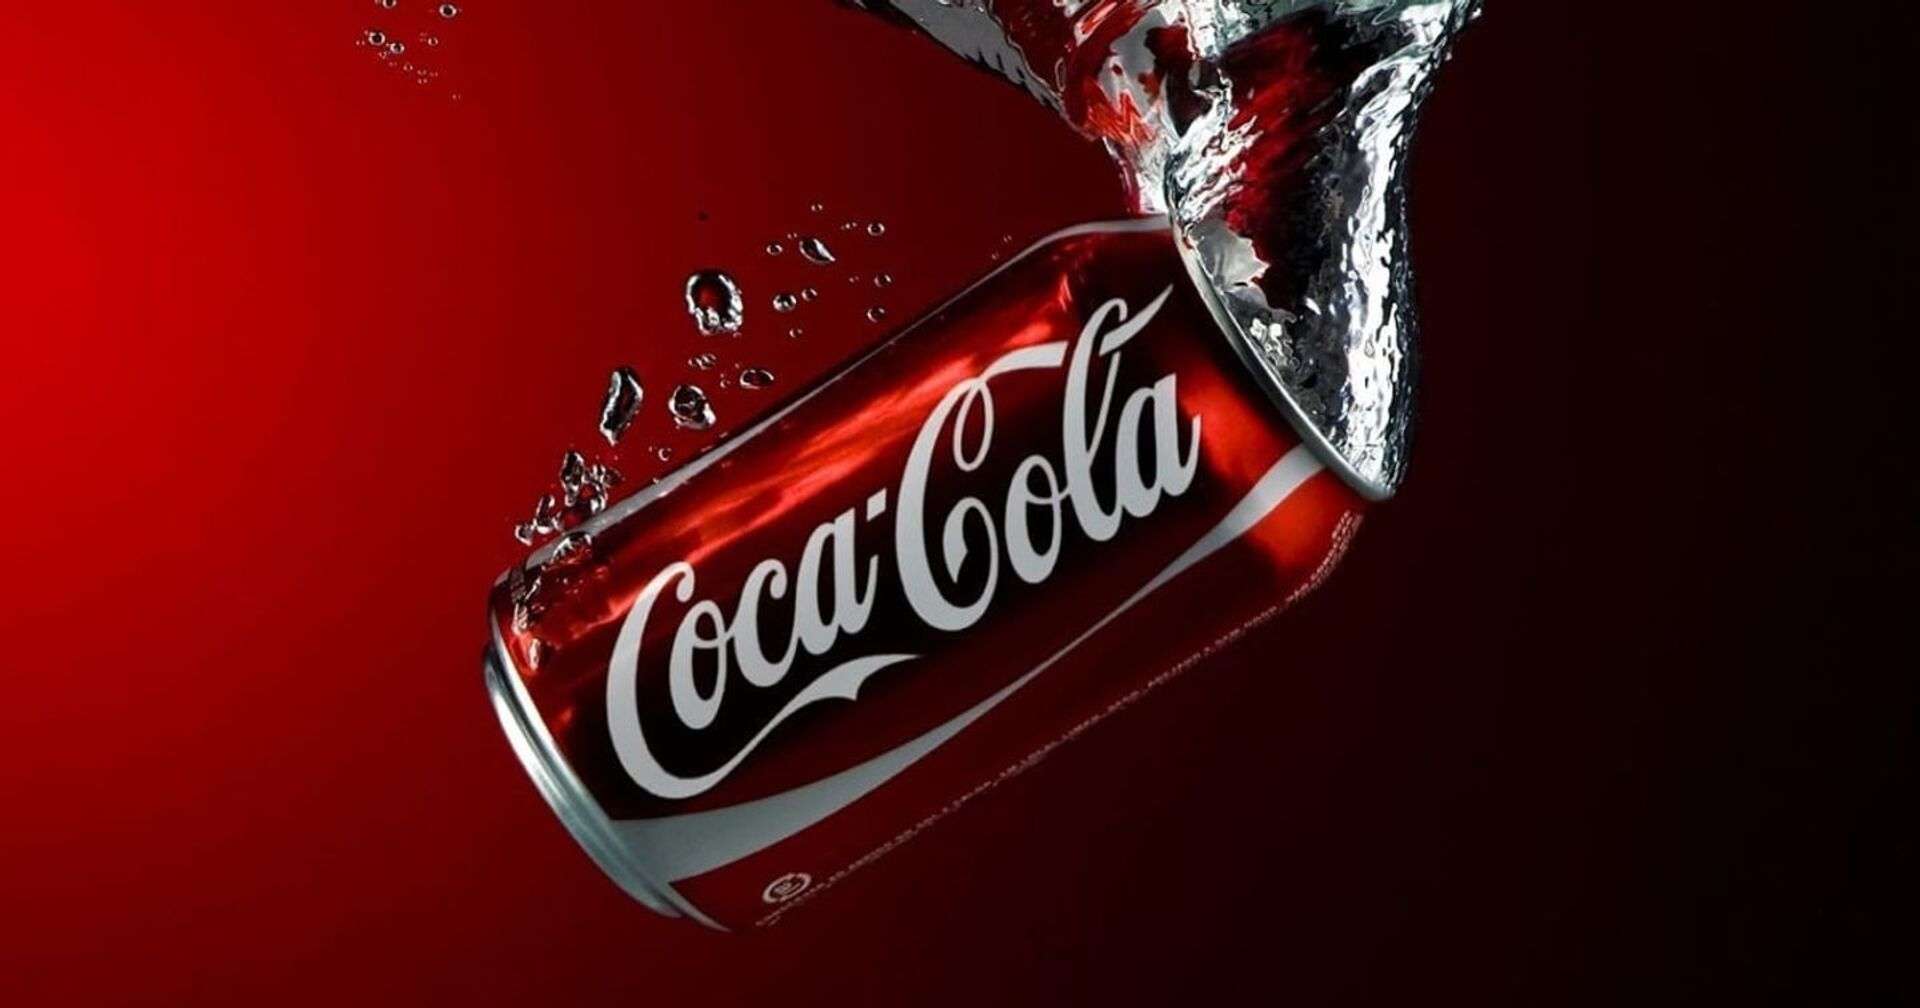 Kể từ khi ra đời vào năm 1892, Coca-Cola đã trở thành thương hiệu nổi tiếng trên toàn thế giới, là loại đồ uống yêu thích của mọi nhà (Ảnh: Internet)